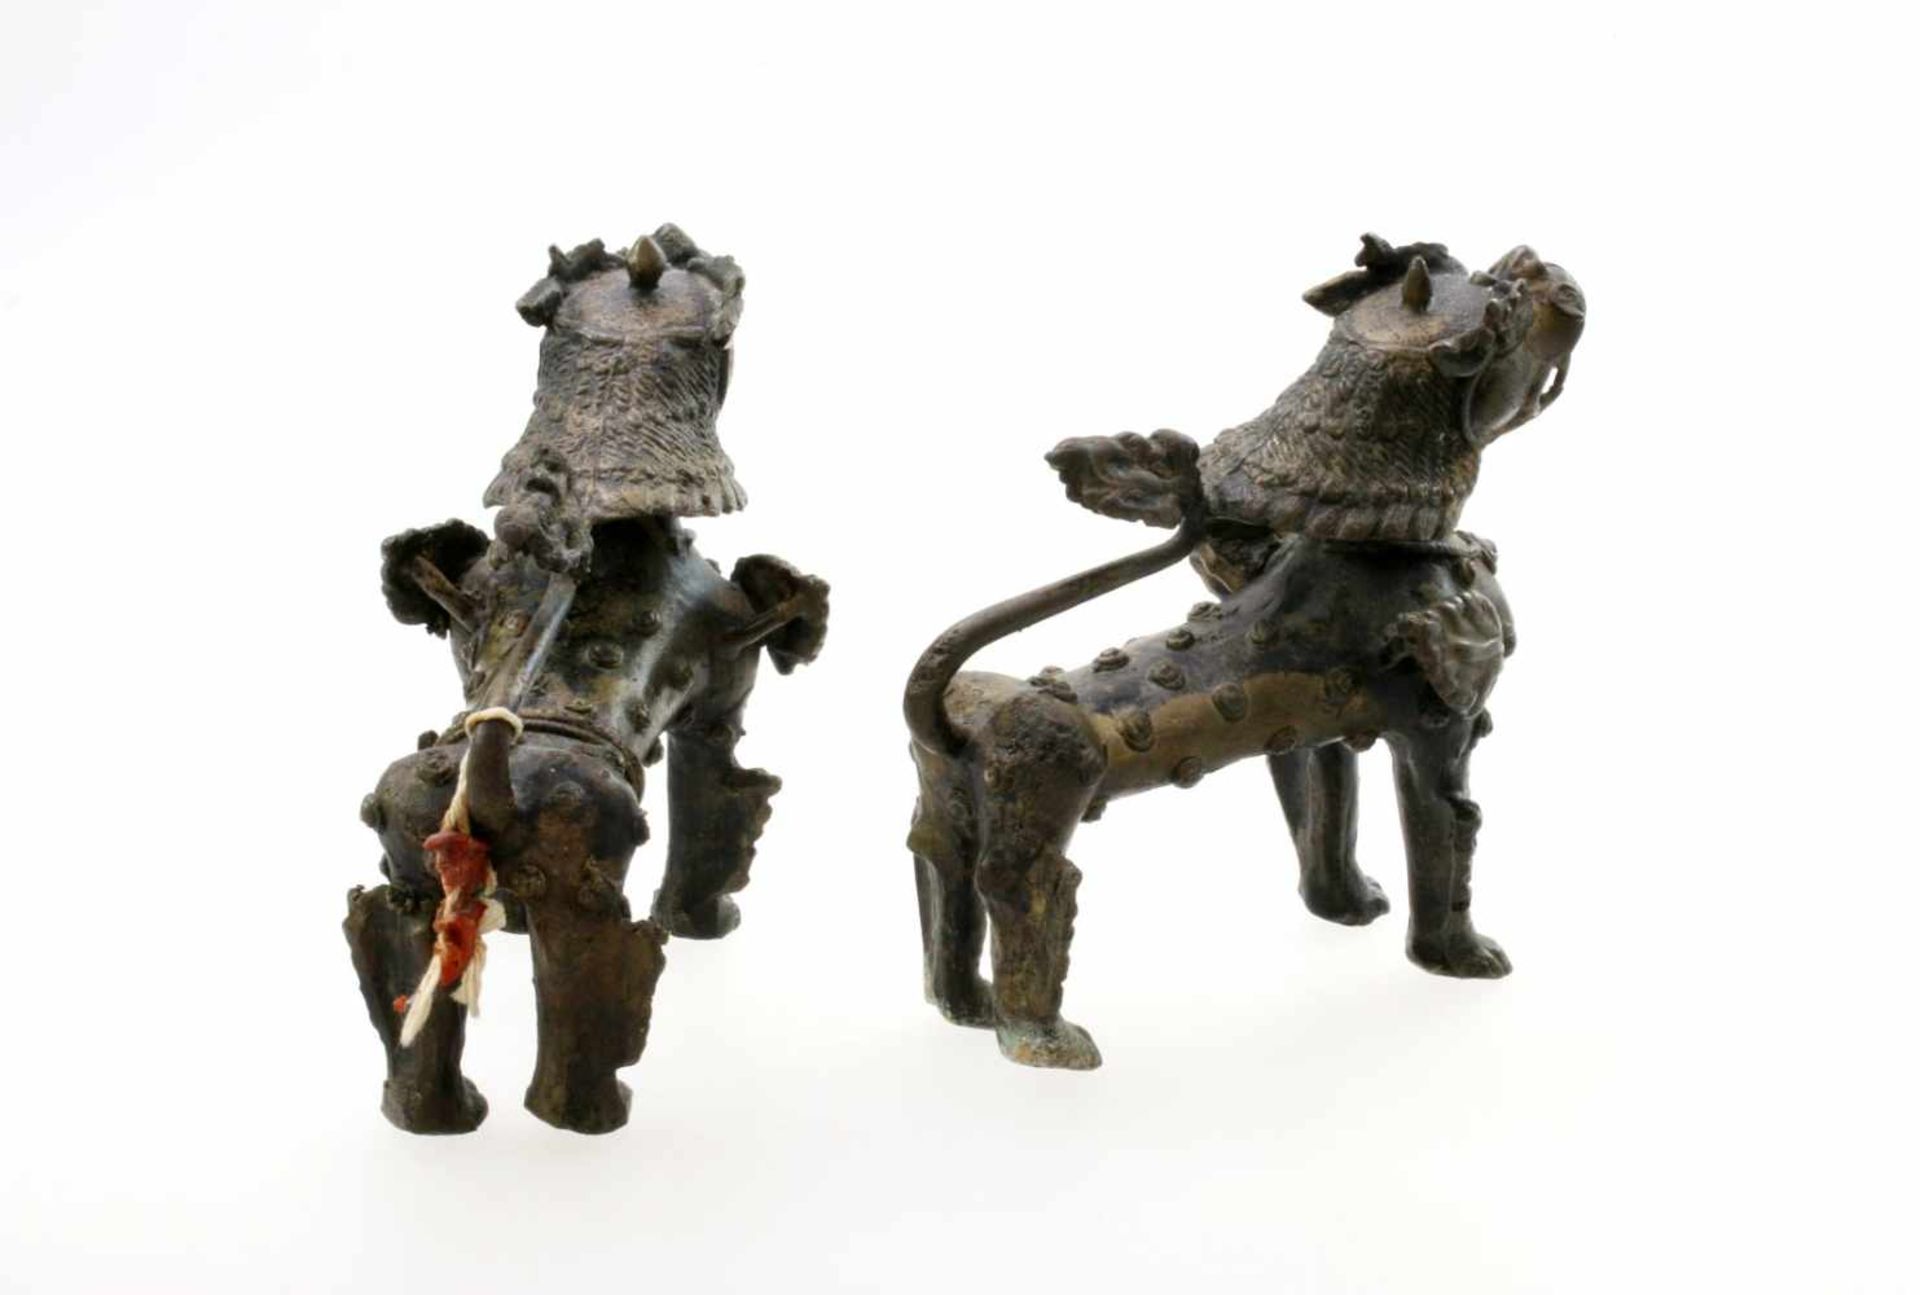 Paar Wächterlöwen - Fo Hunde Tibet Schwere Bronzefiguren, schöne Handarbeit. Maße: 15 x 15 cm. - Bild 2 aus 2